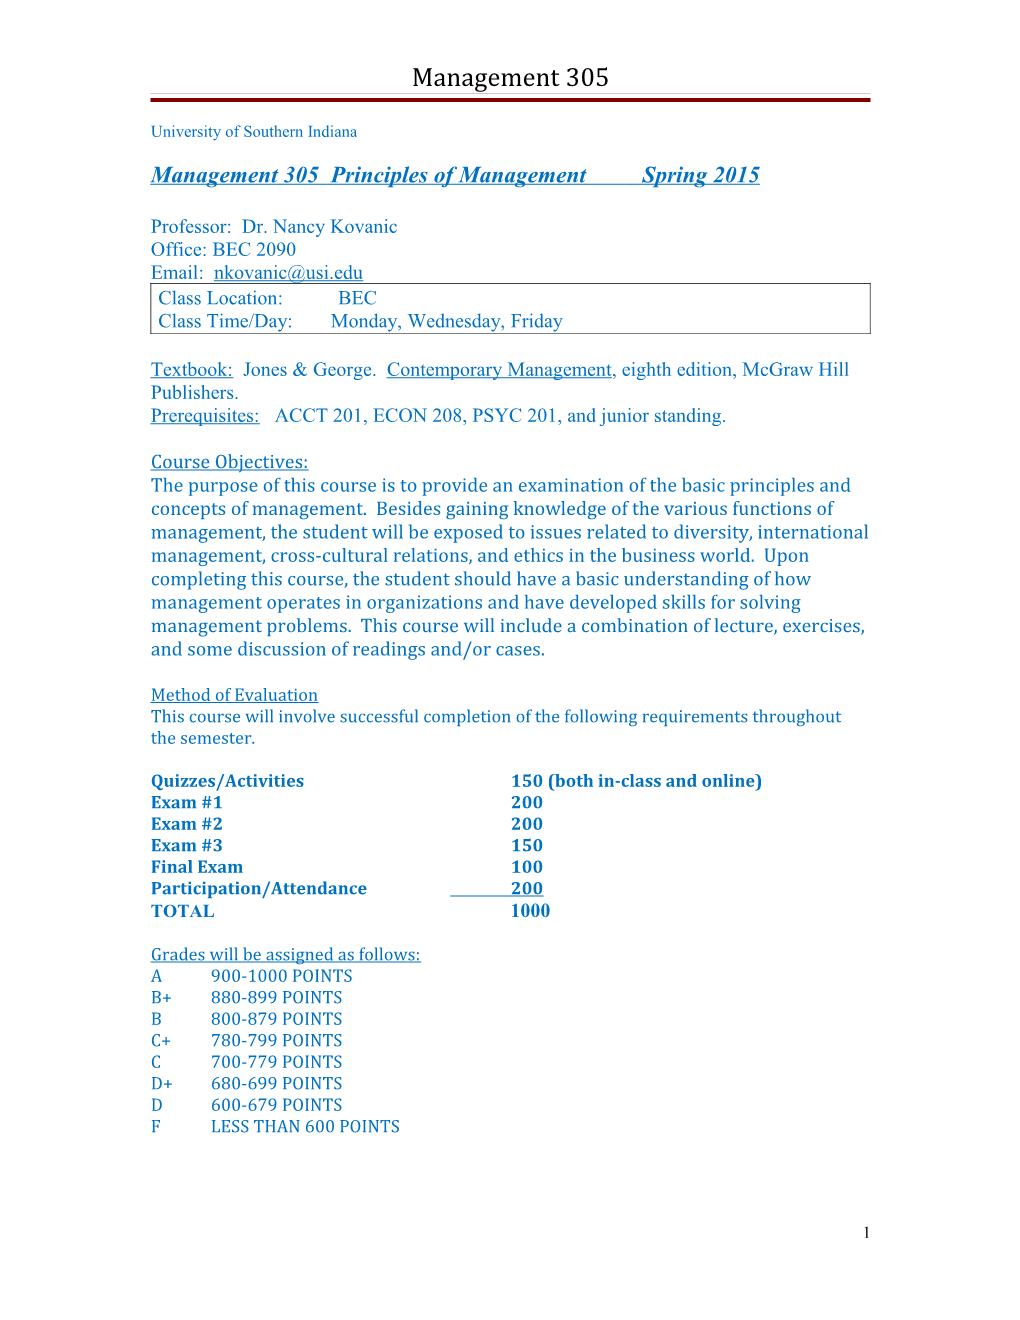 Management 305Principles of Management Spring 2015